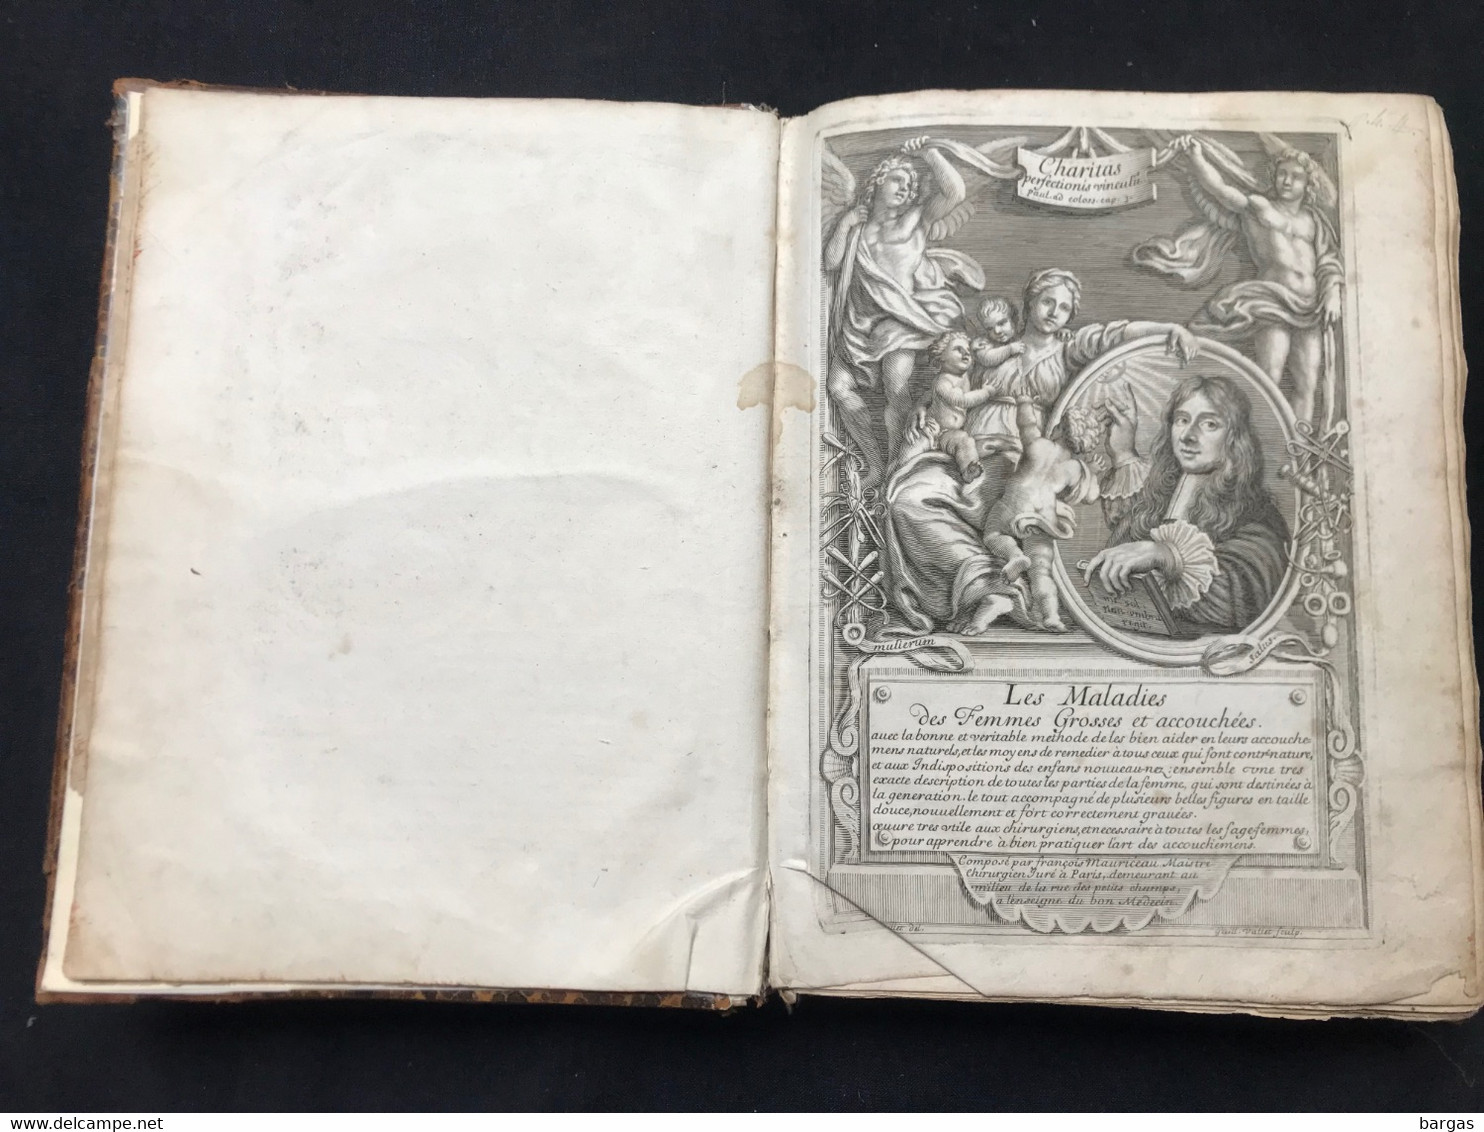 1675 - médecine - traité des maladies des femmes grosses - accouchement gynécologie